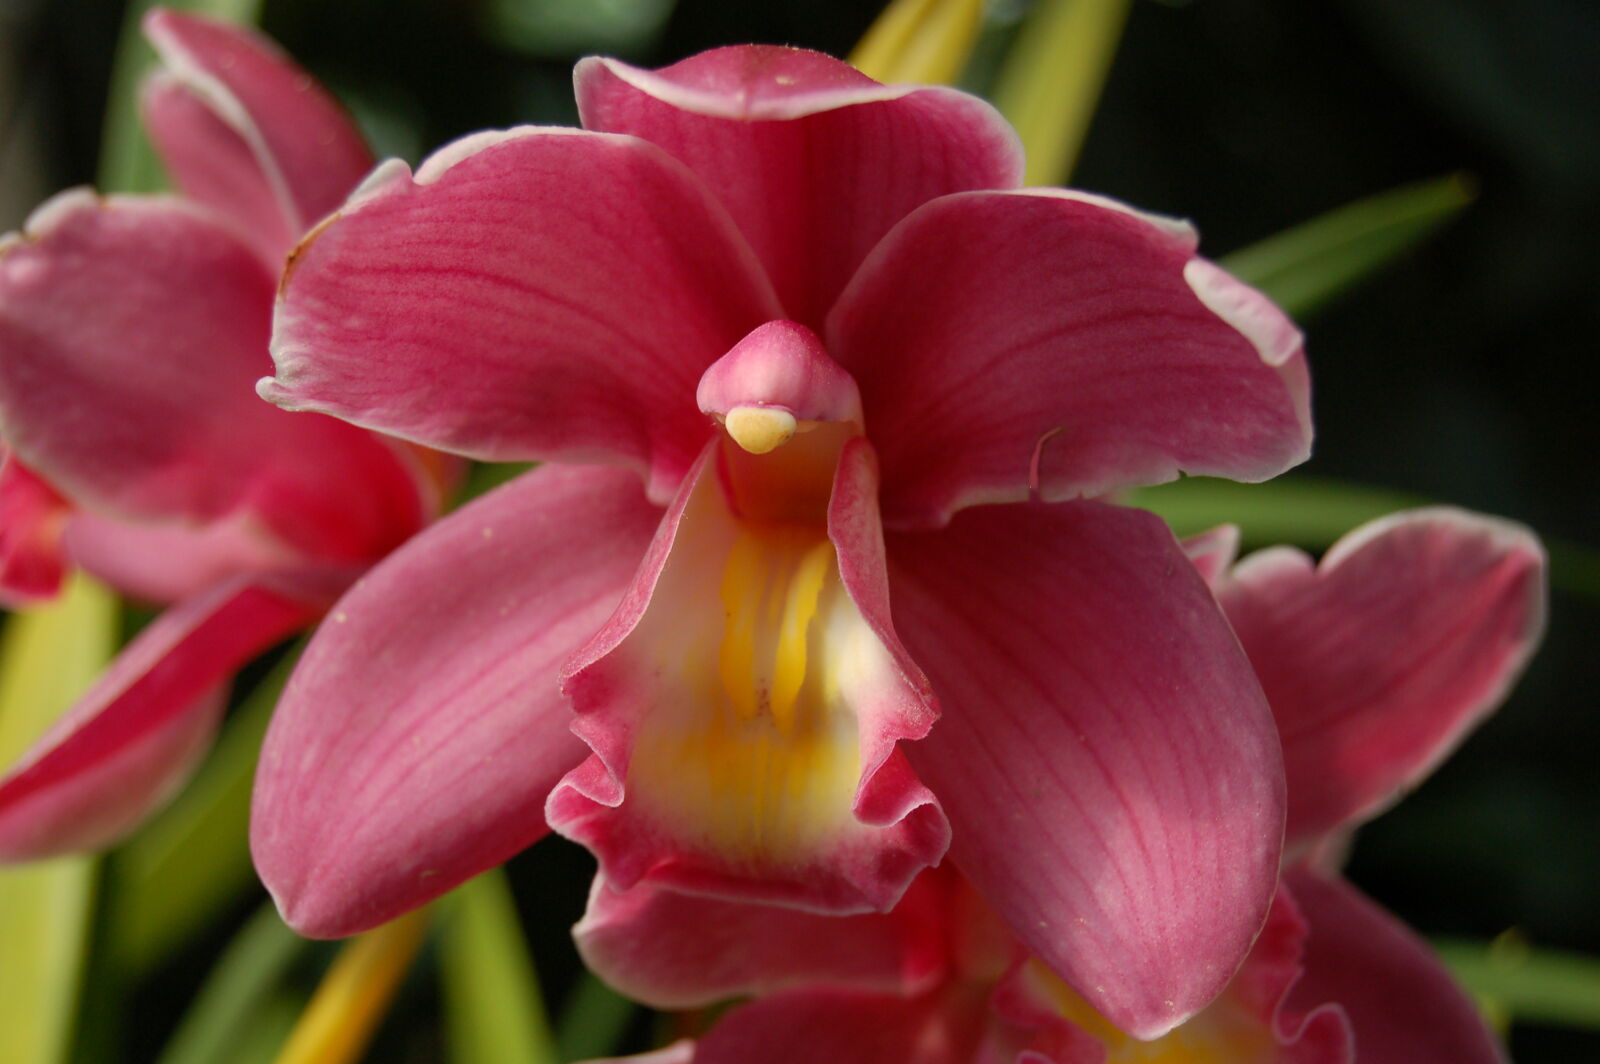 Nikon D50 + AF-S DX Zoom-Nikkor 18-55mm f/3.5-5.6G ED sample photo. Orchid, orchids, pink photography